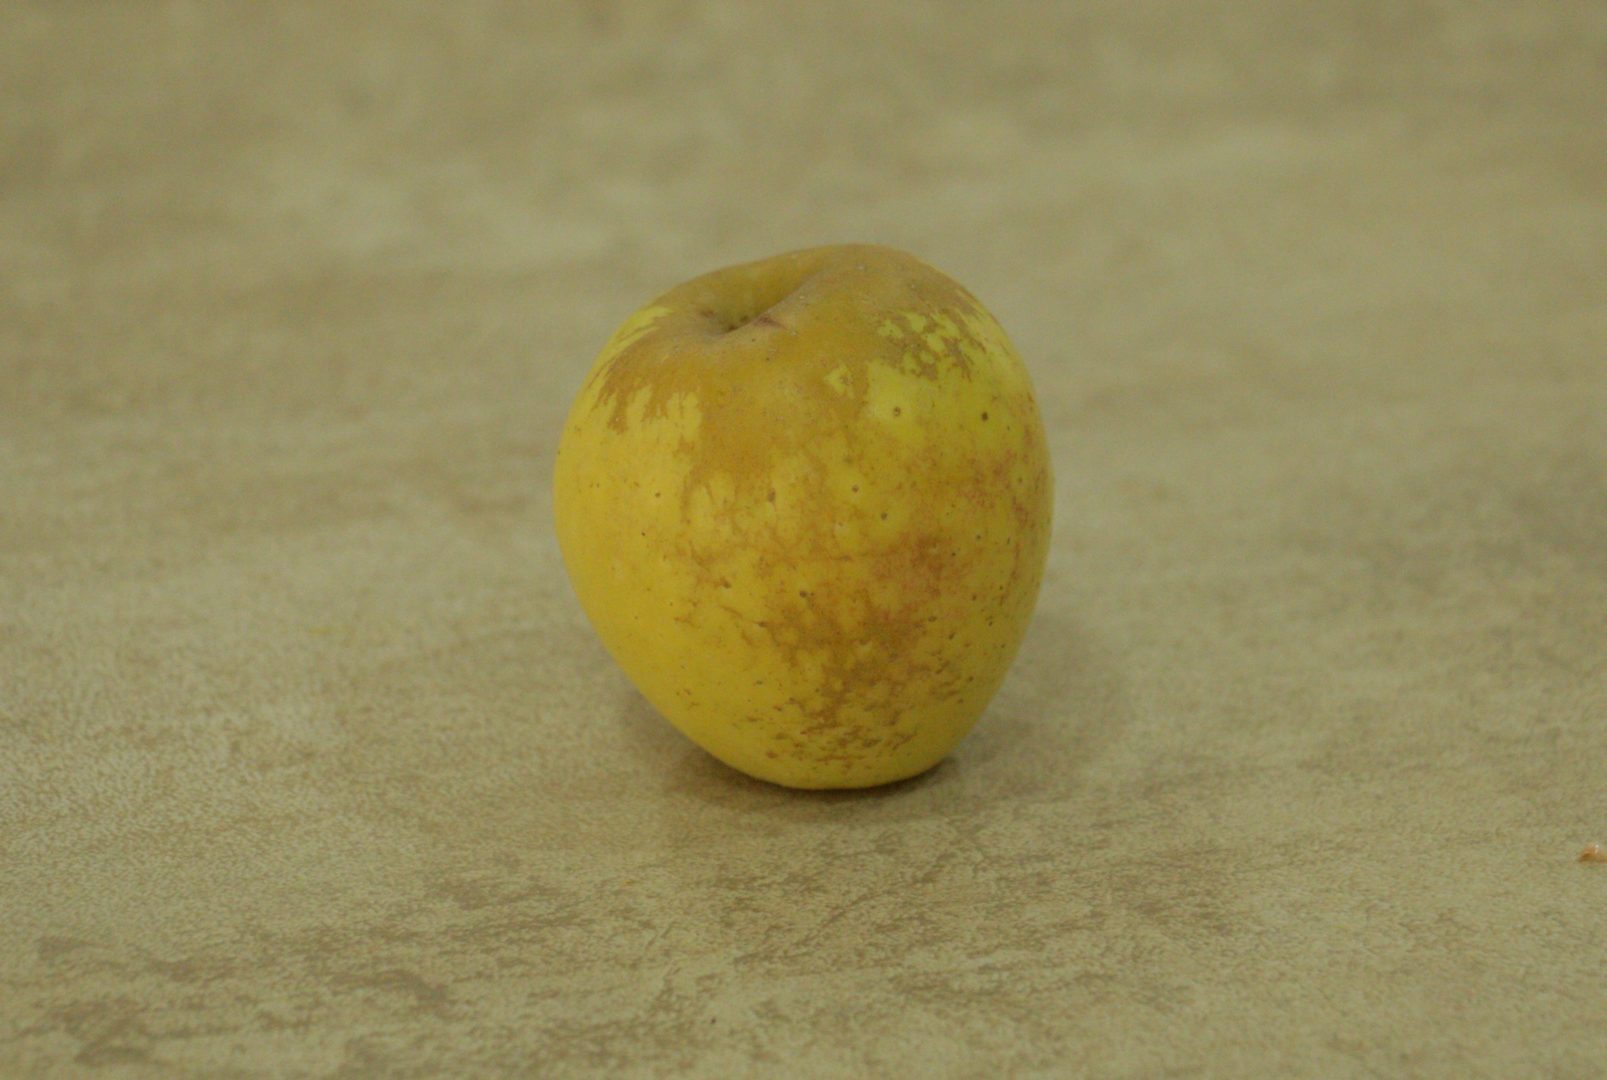 Яблоко покрыто ржавой сеткой - оржавленность, или сетчатость яблока при мучнистой росе